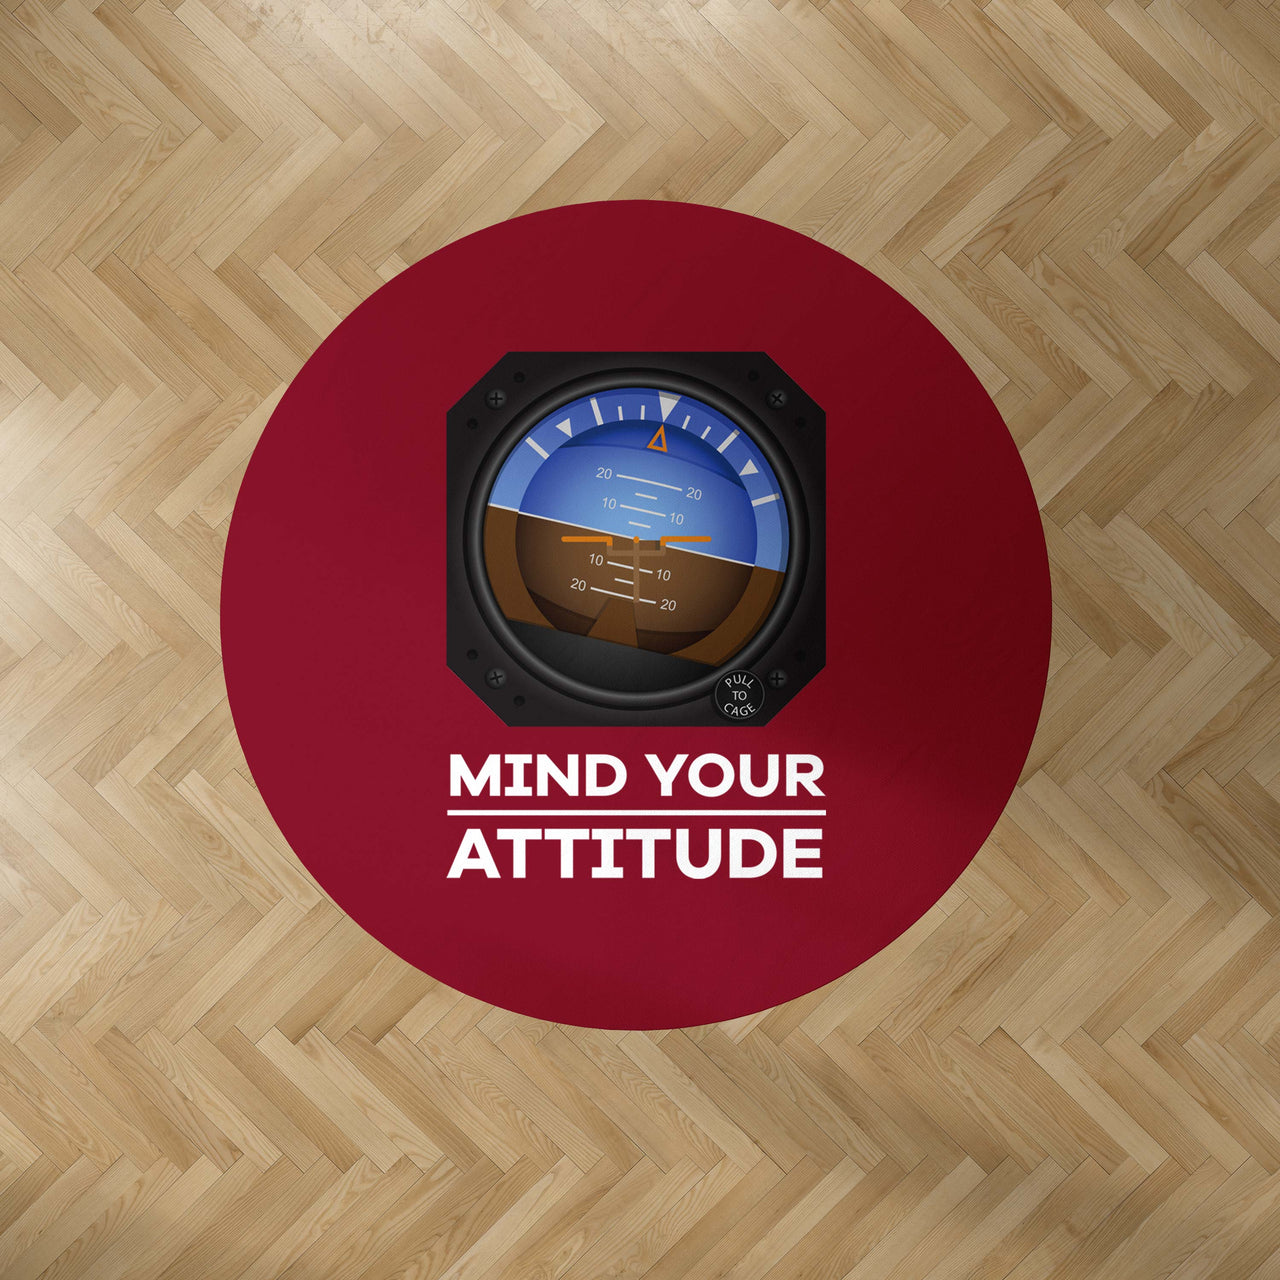 Mind Your Attitude Designed Carpet & Floor Mats (Round)